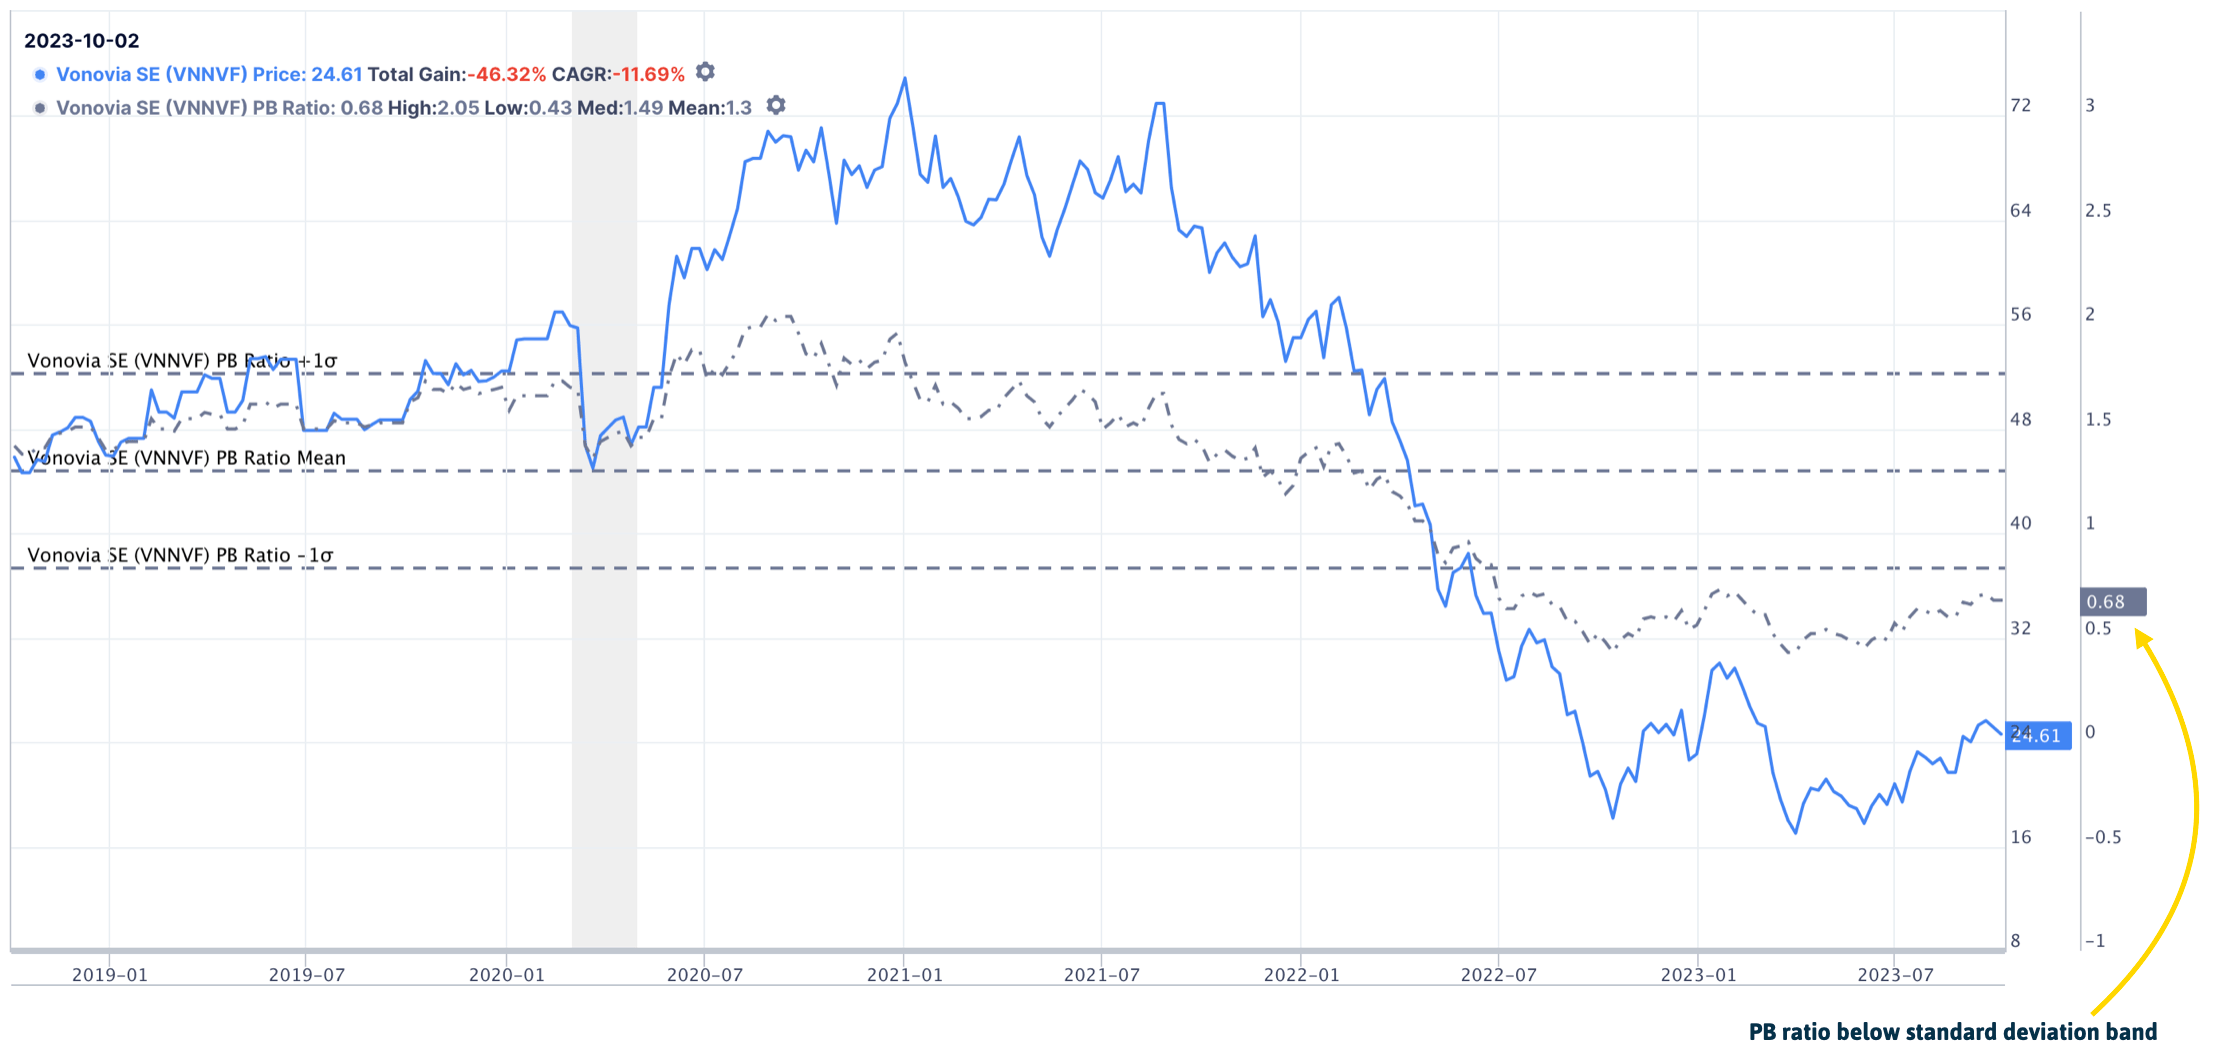 Vonovia's stock price vs PB ratio 2023-10